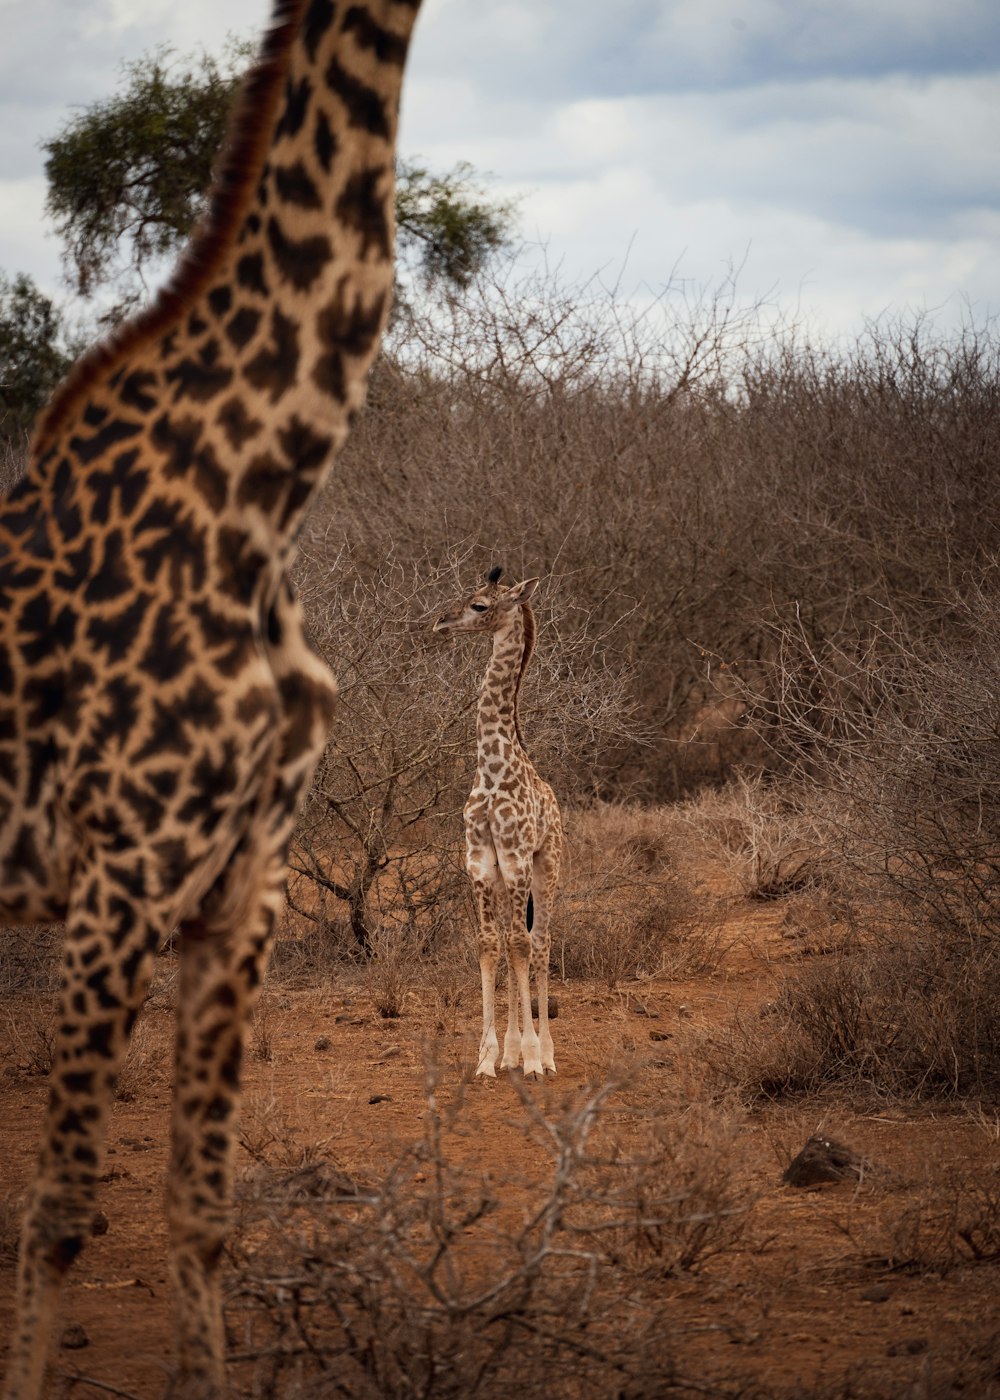 a giraffe and its calf in a grassland